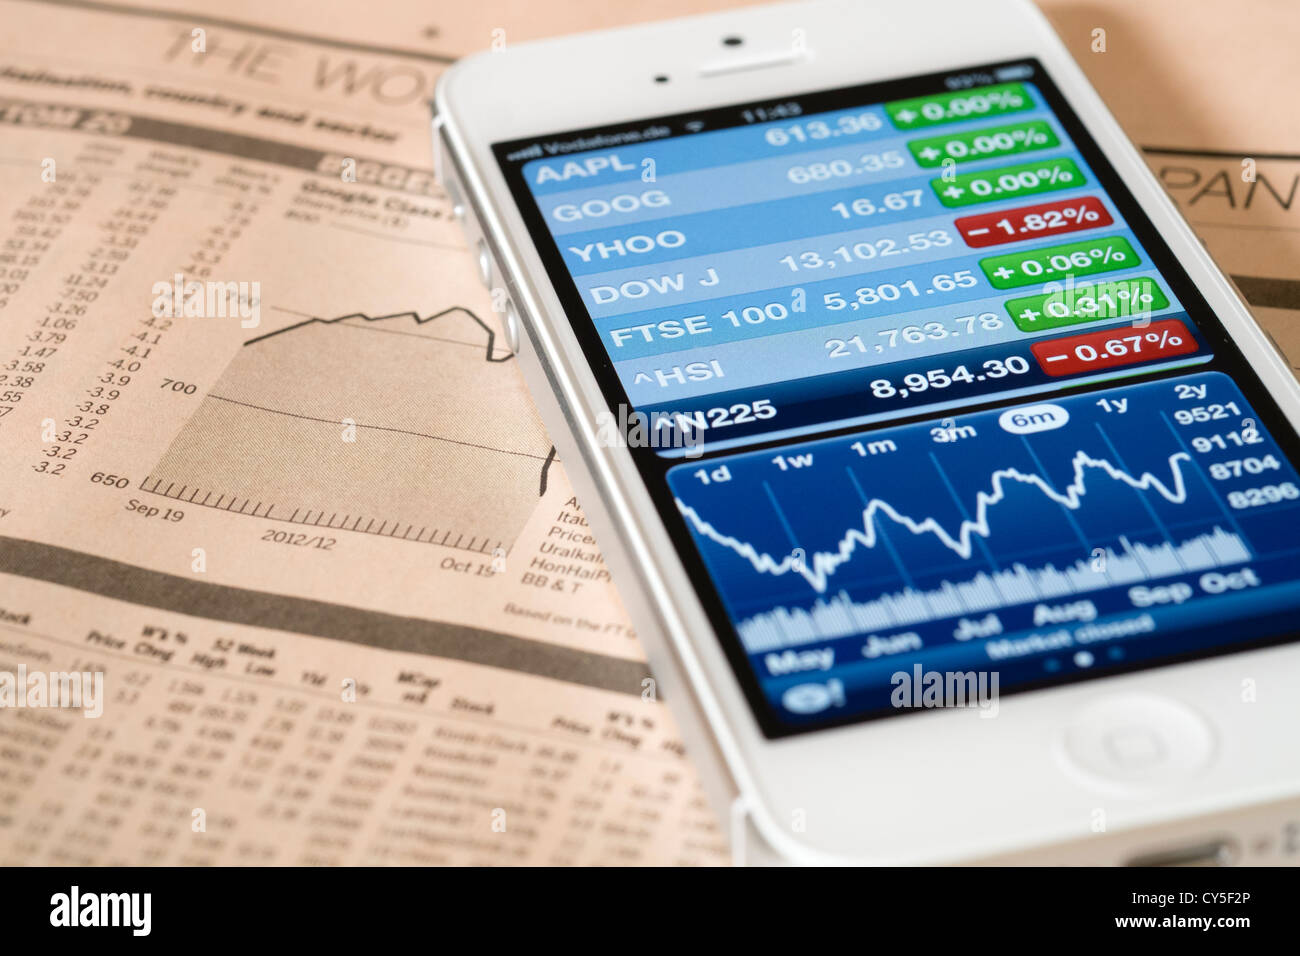 Détail de l'iPhone 5 écran smart phone app financière montrant avec Nasdaq stock market data Banque D'Images